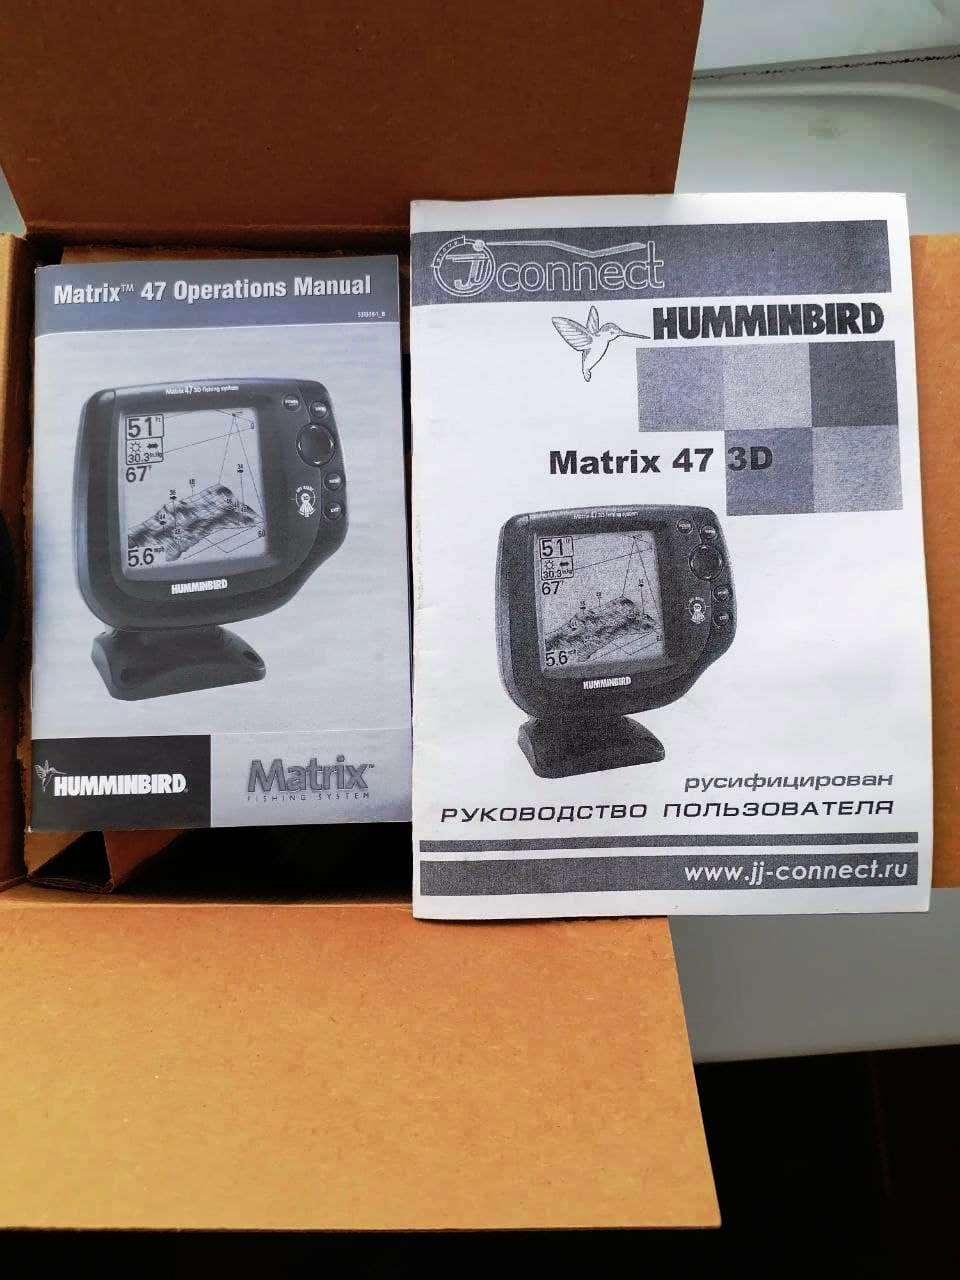 M atx47 shop pages. Датчик GPS для Matrix 47 3d. Эхолот Матрикс 47 3д обзор. Матрикс 47 3d комплект.